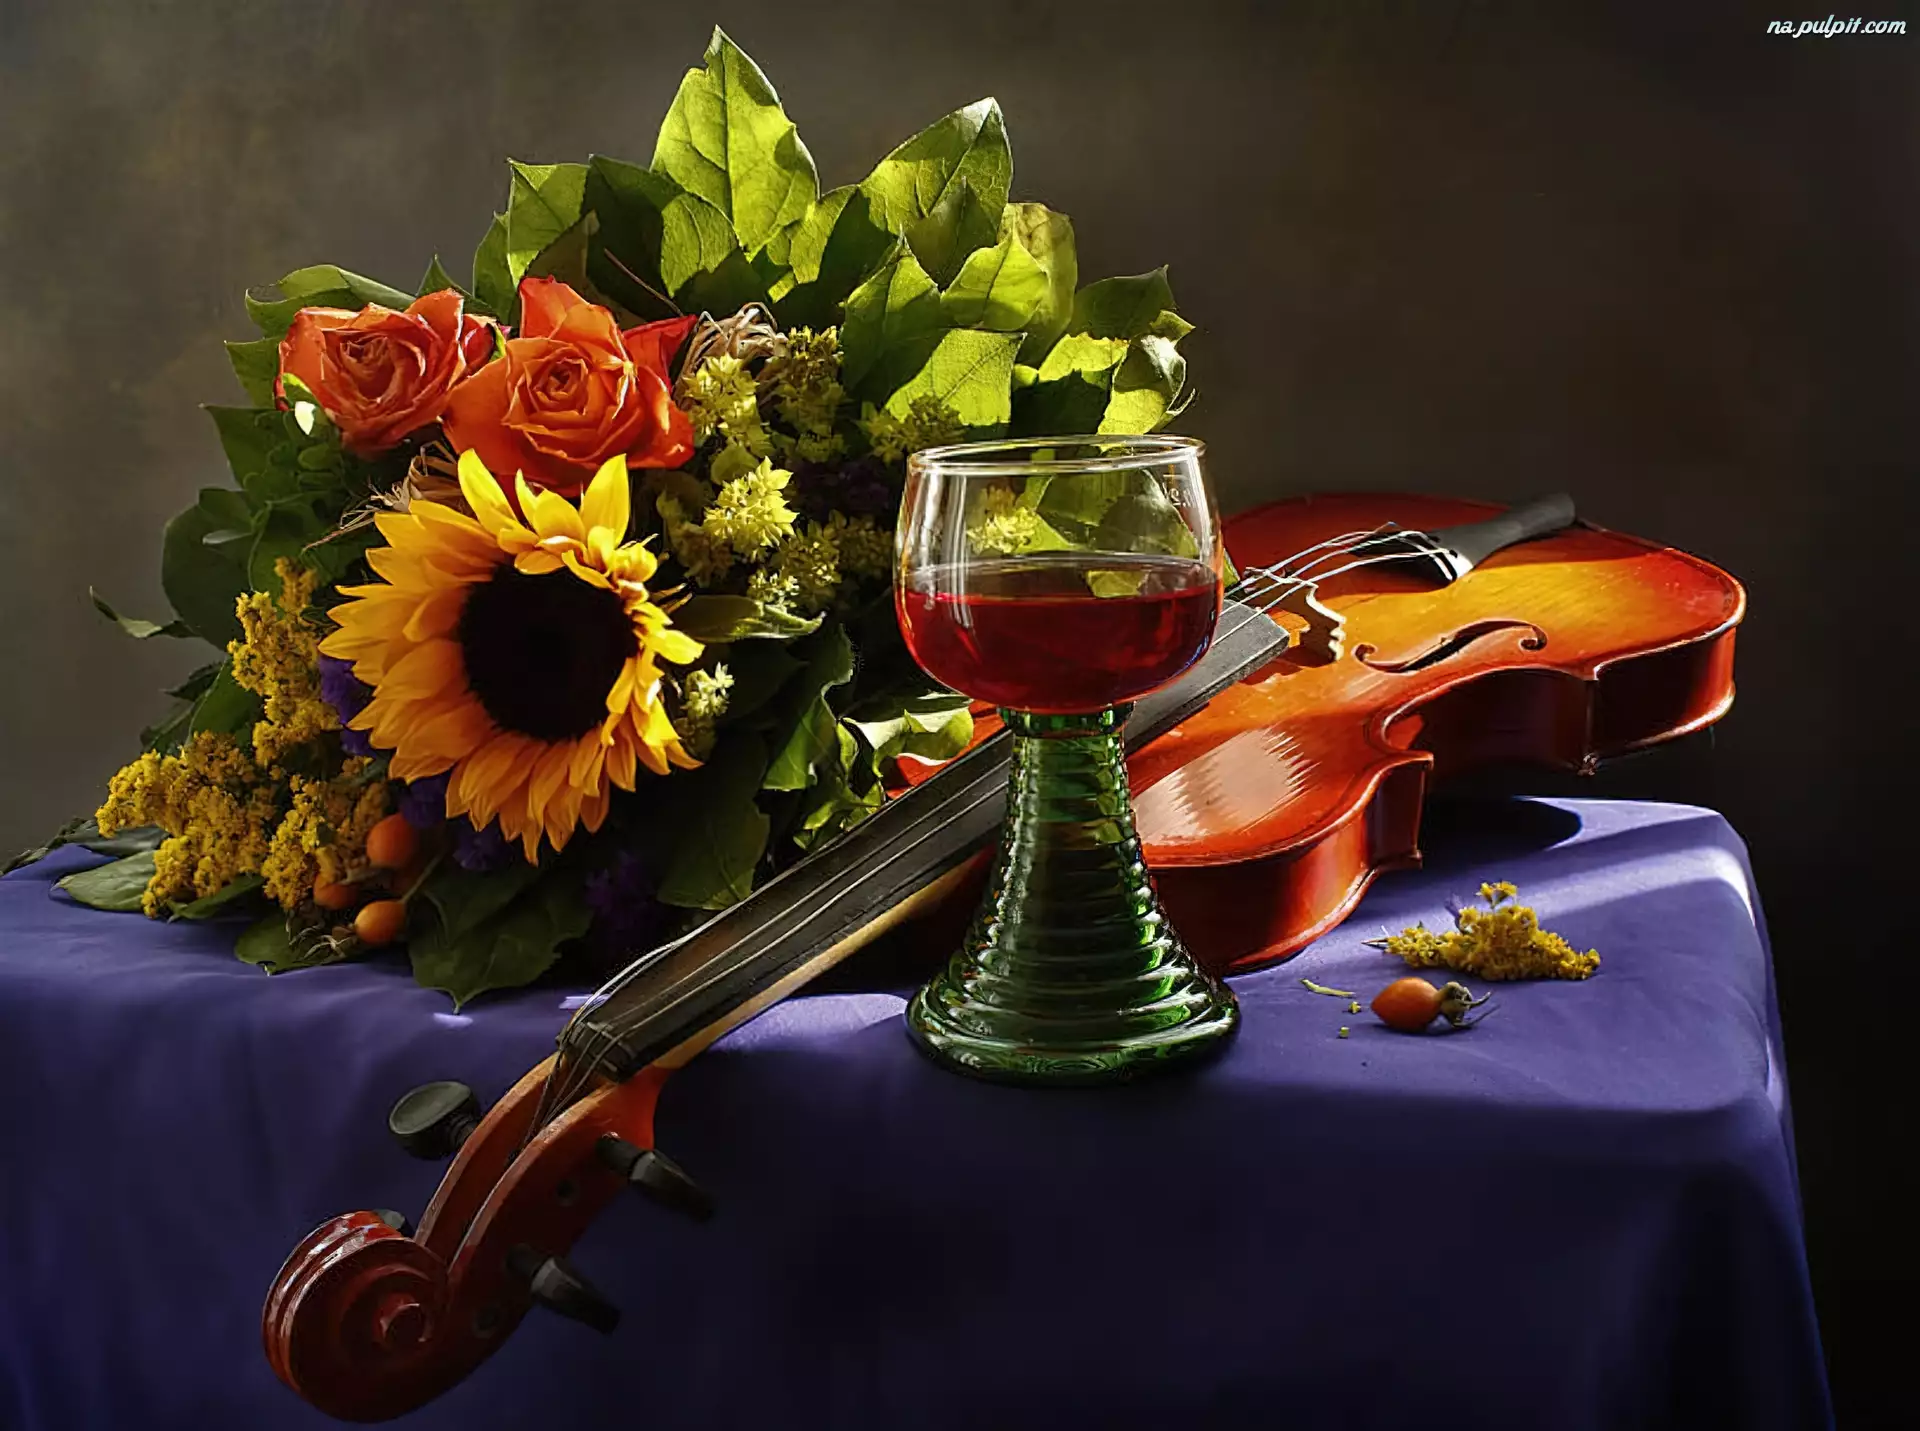 Красивый вечер музыкальный. Натюрморт с музыкальными инструментами. Музыкальные инструменты и цветы. Натюрморт со скрипкой. Красивая вечерняя композиция.